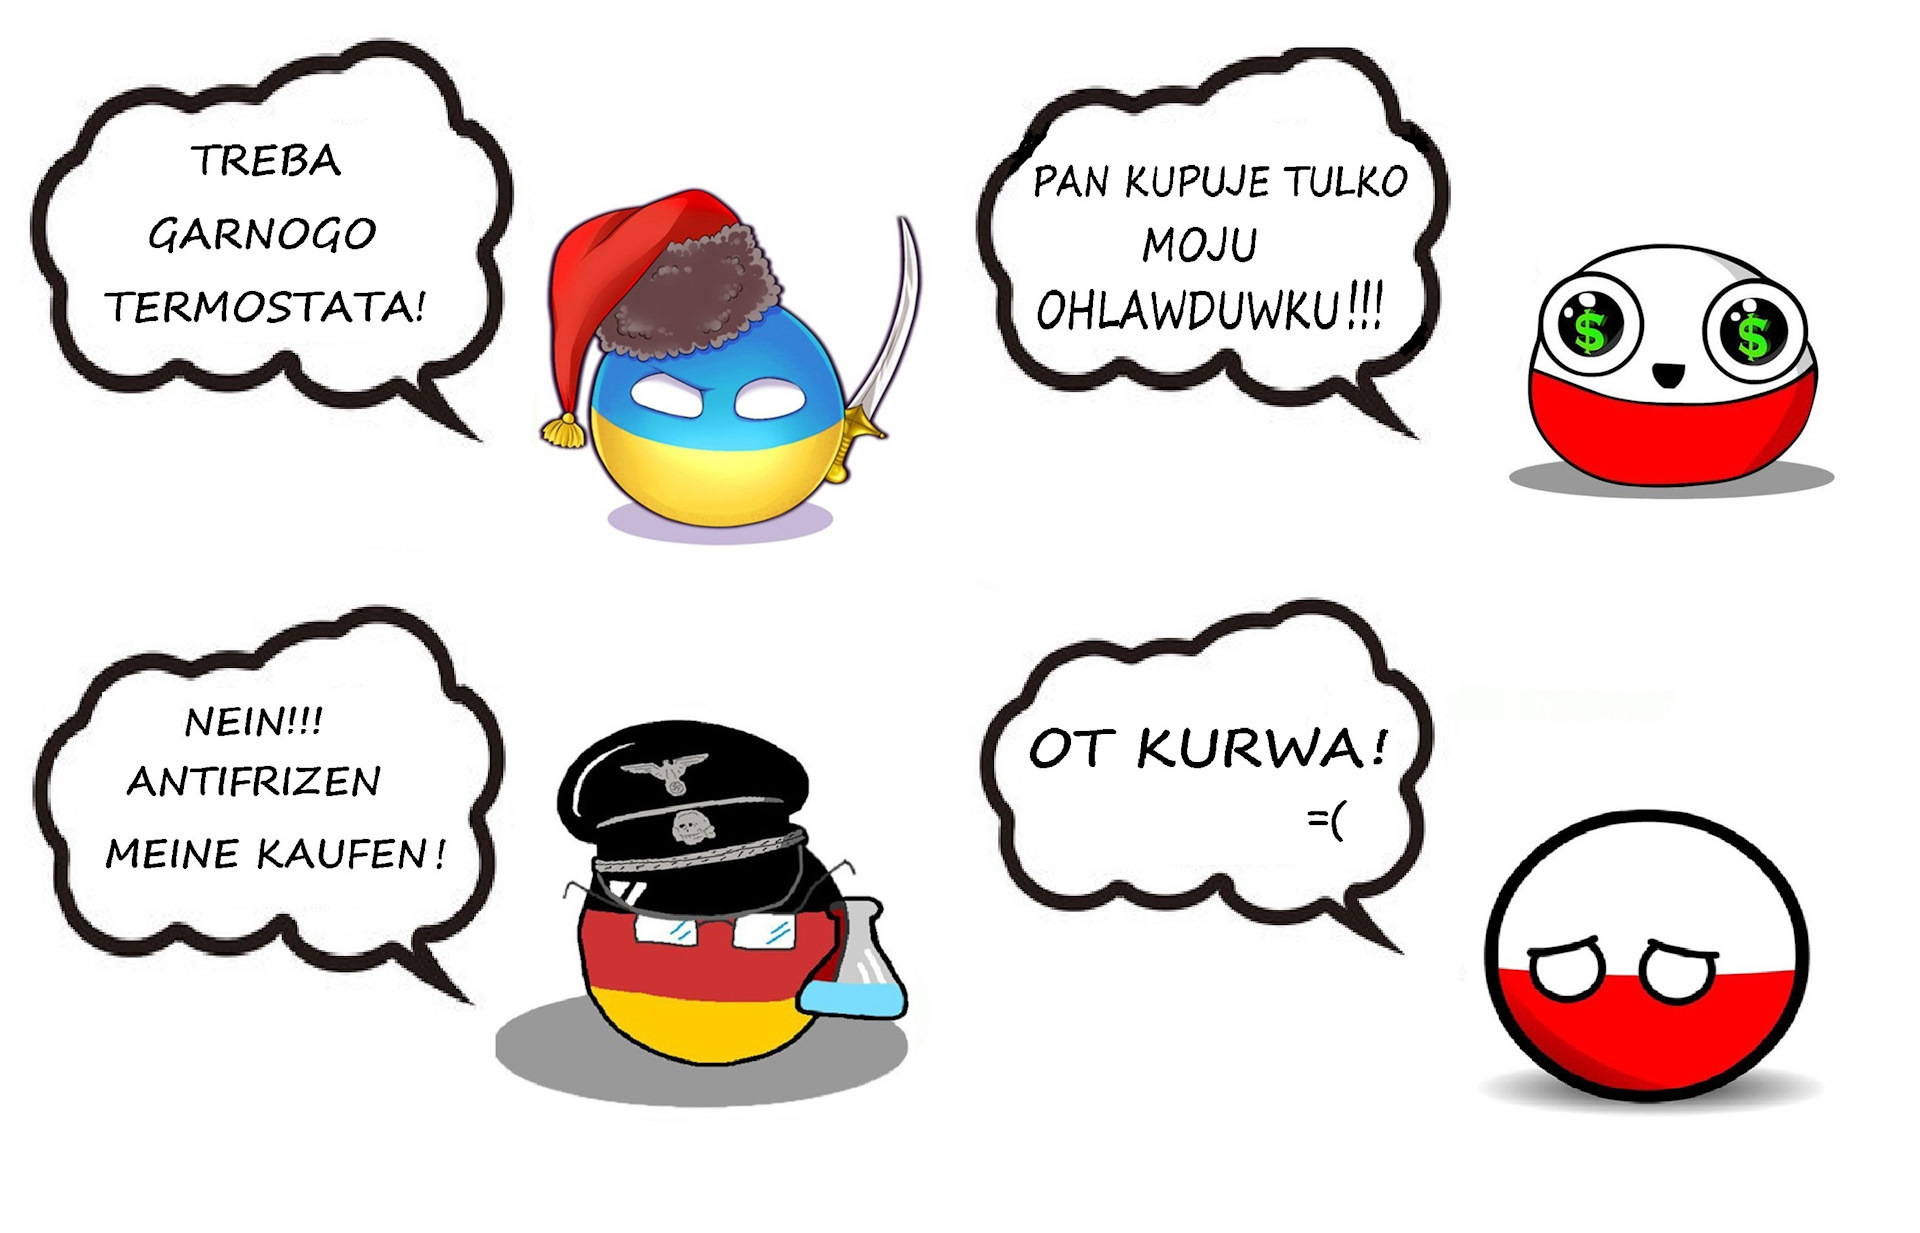 Kurwa perdole. Польша пше. Пше на польском. Польша пше пше. Пше пше поляки.